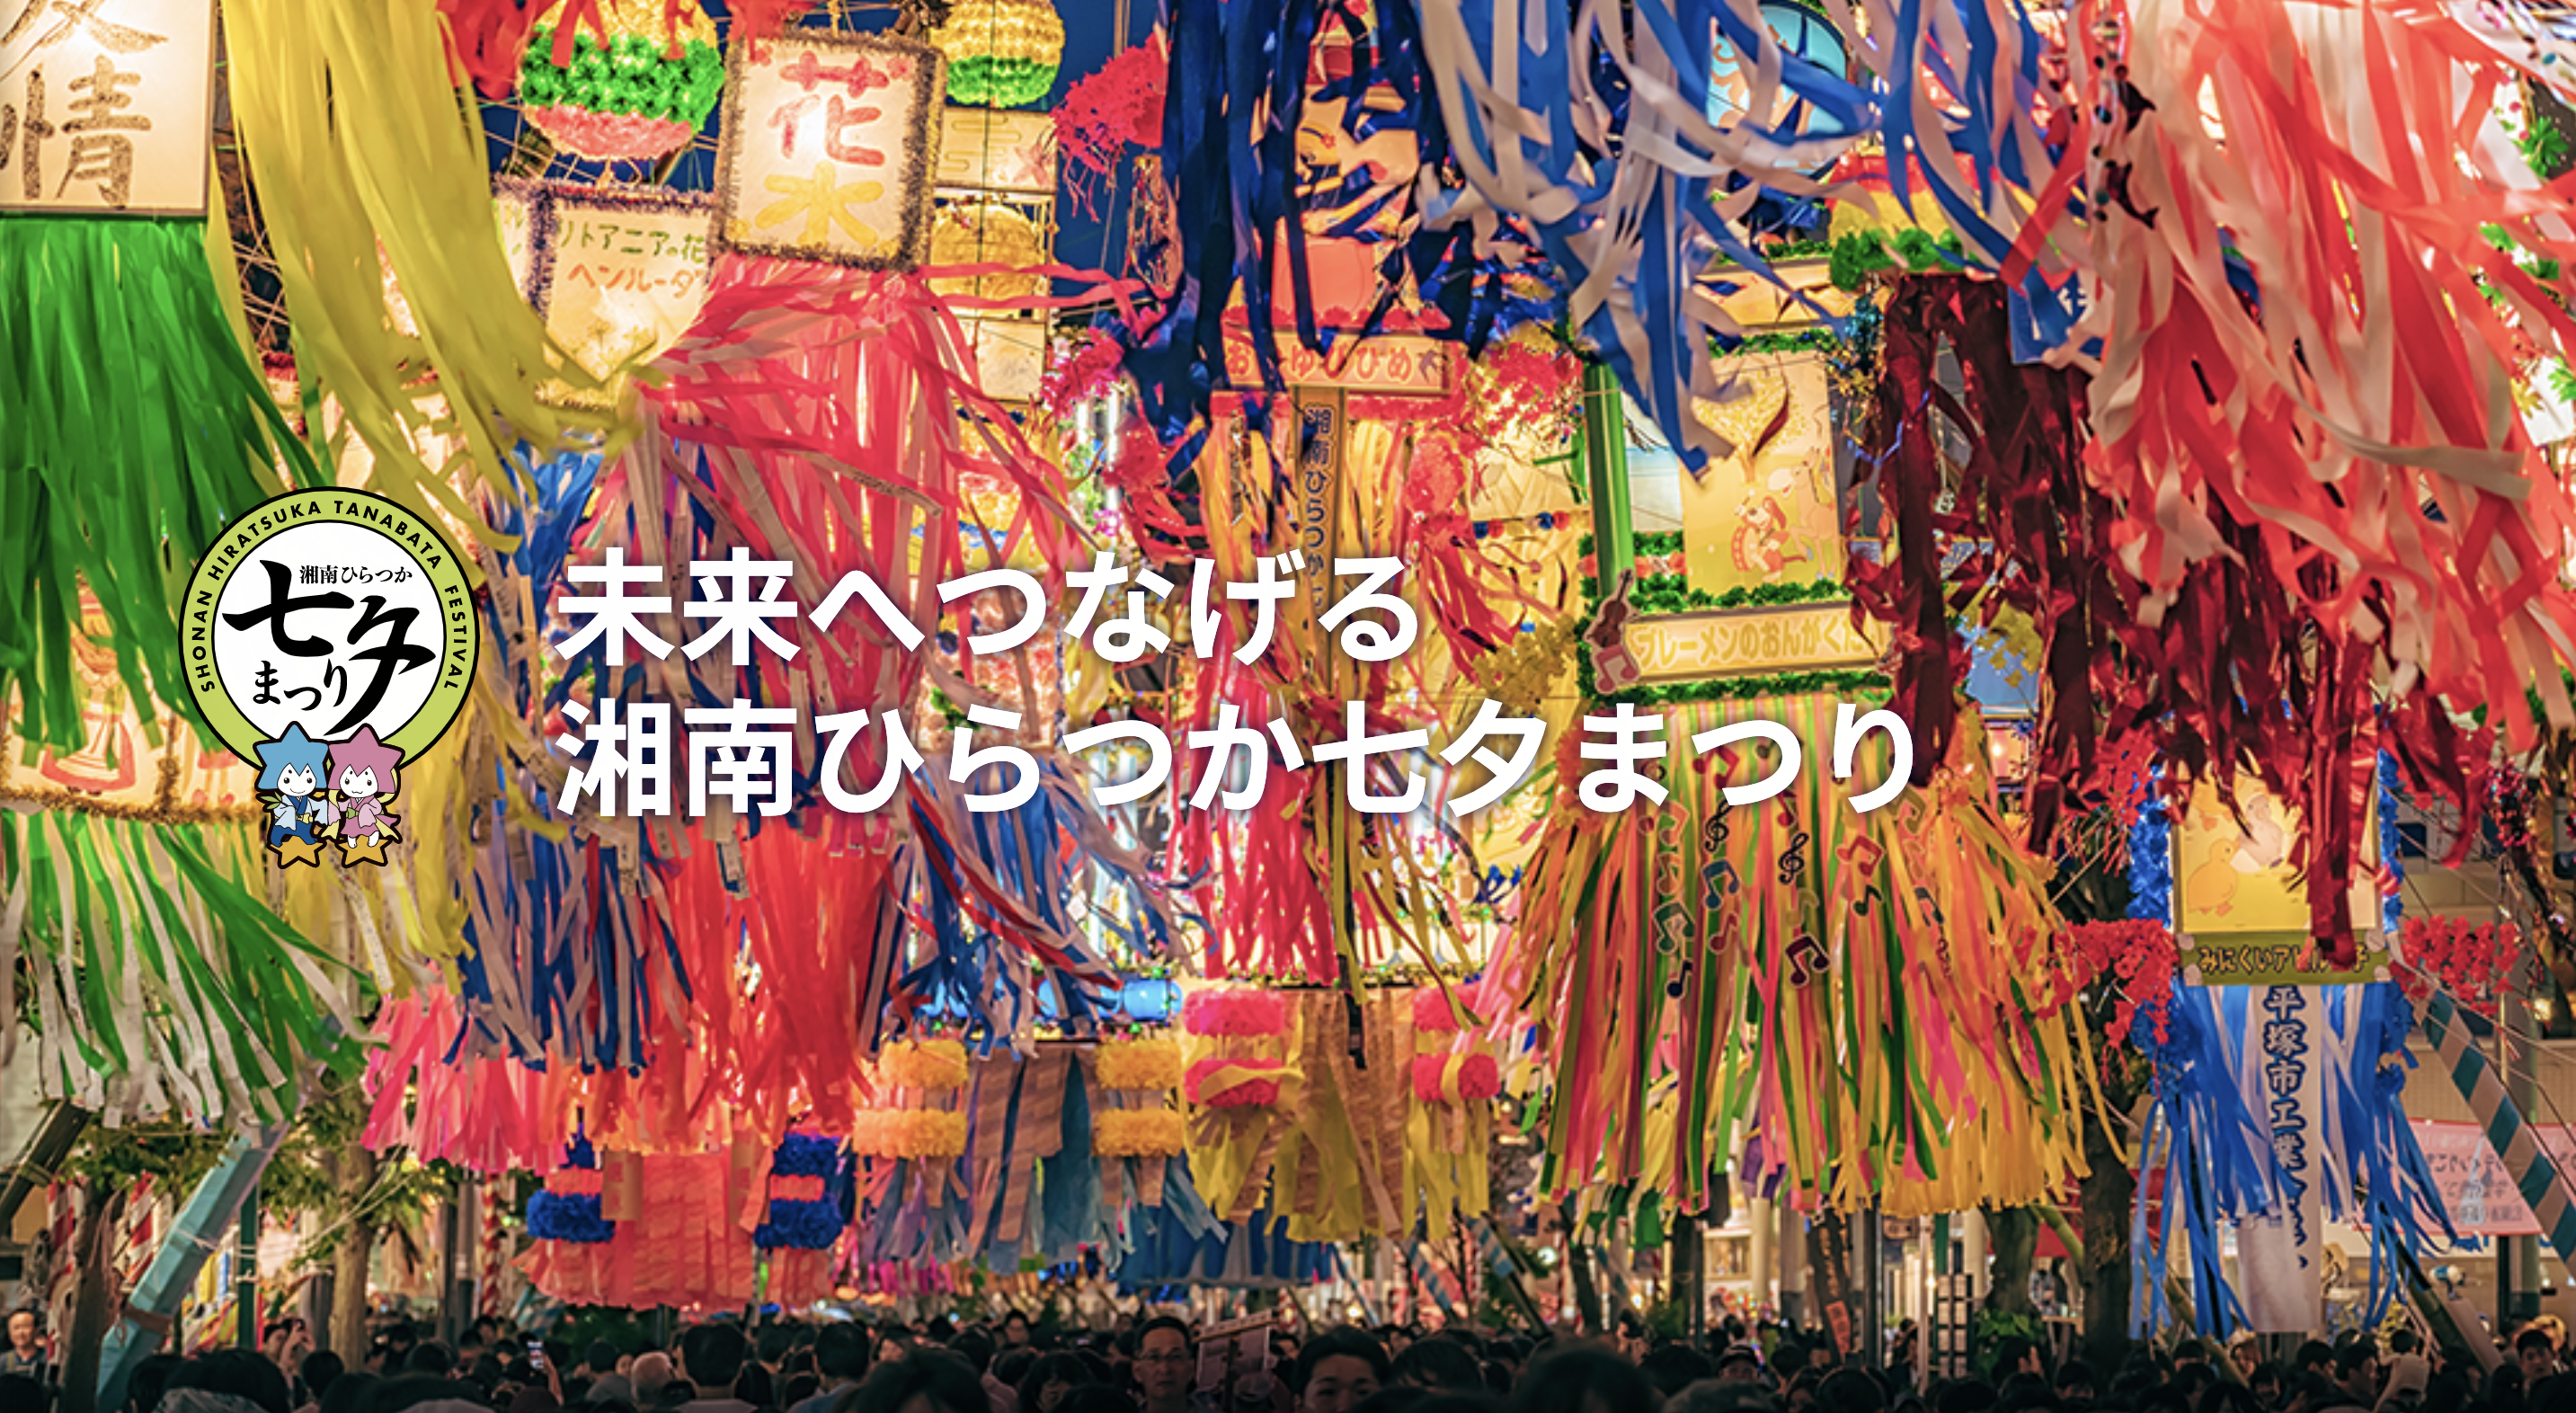 Shonan Hiratsuka Tanabata Festiva